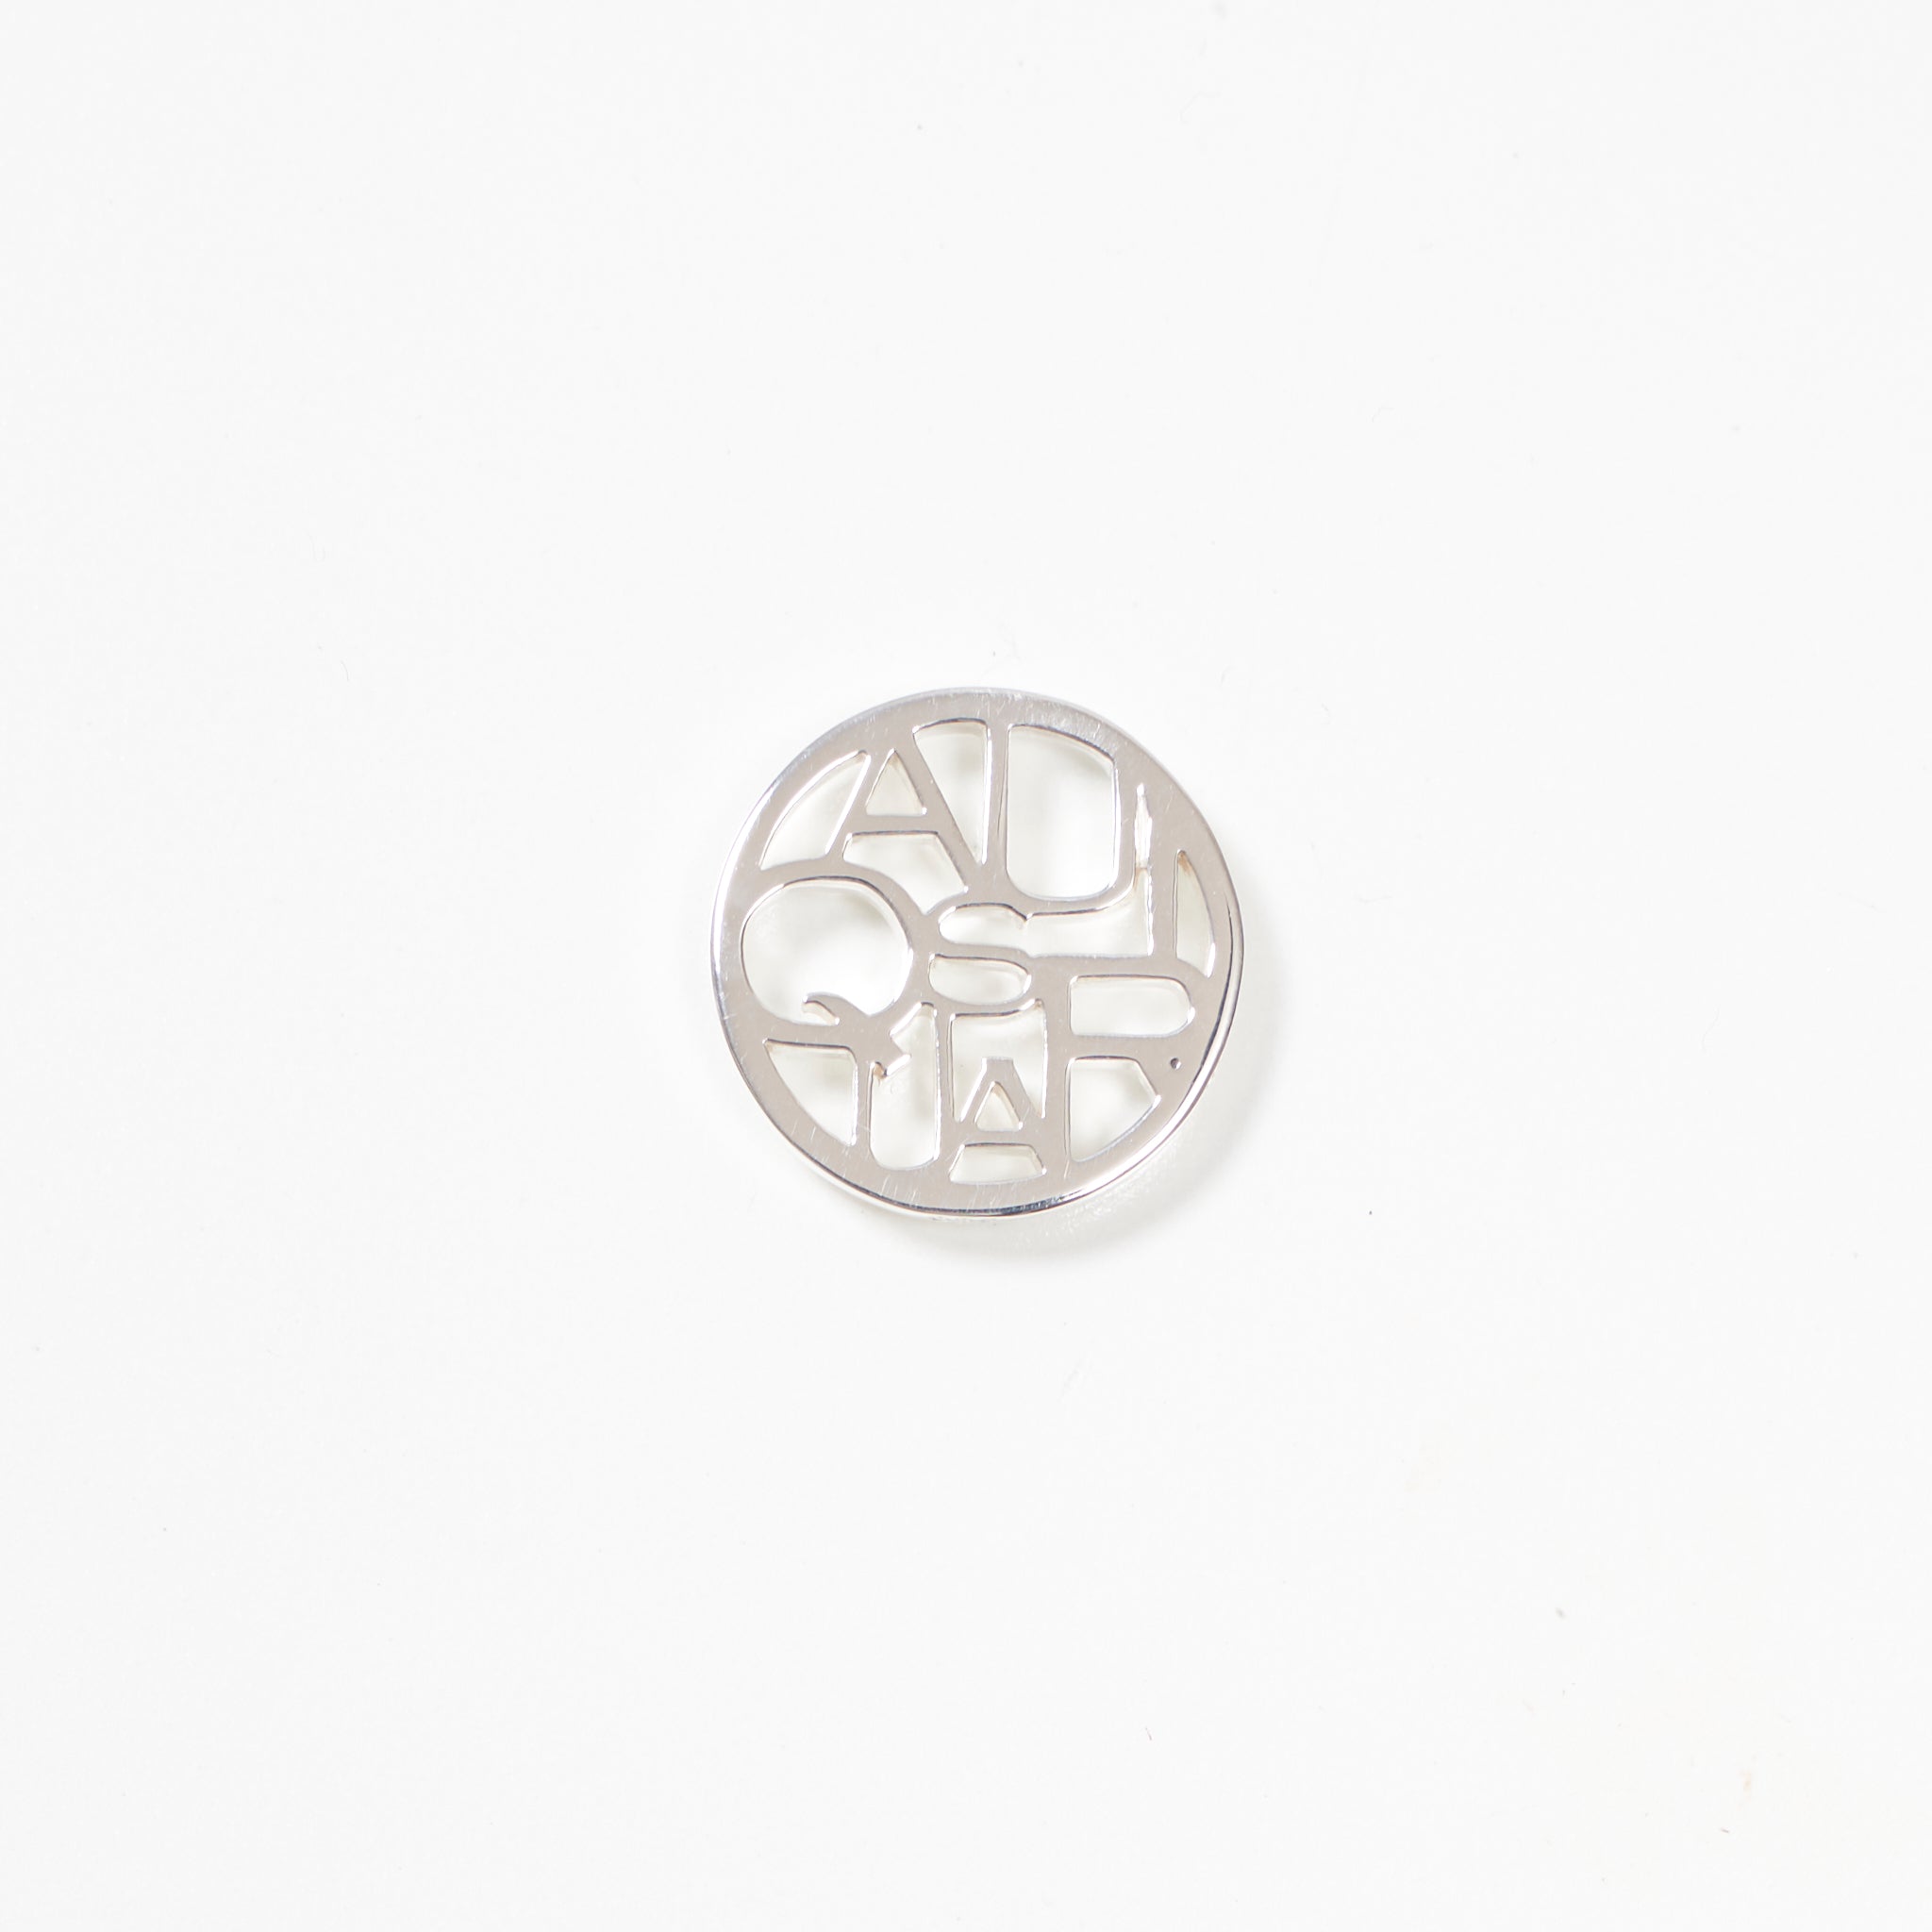 Zodiac Circle Necklace 48cm -Silver-